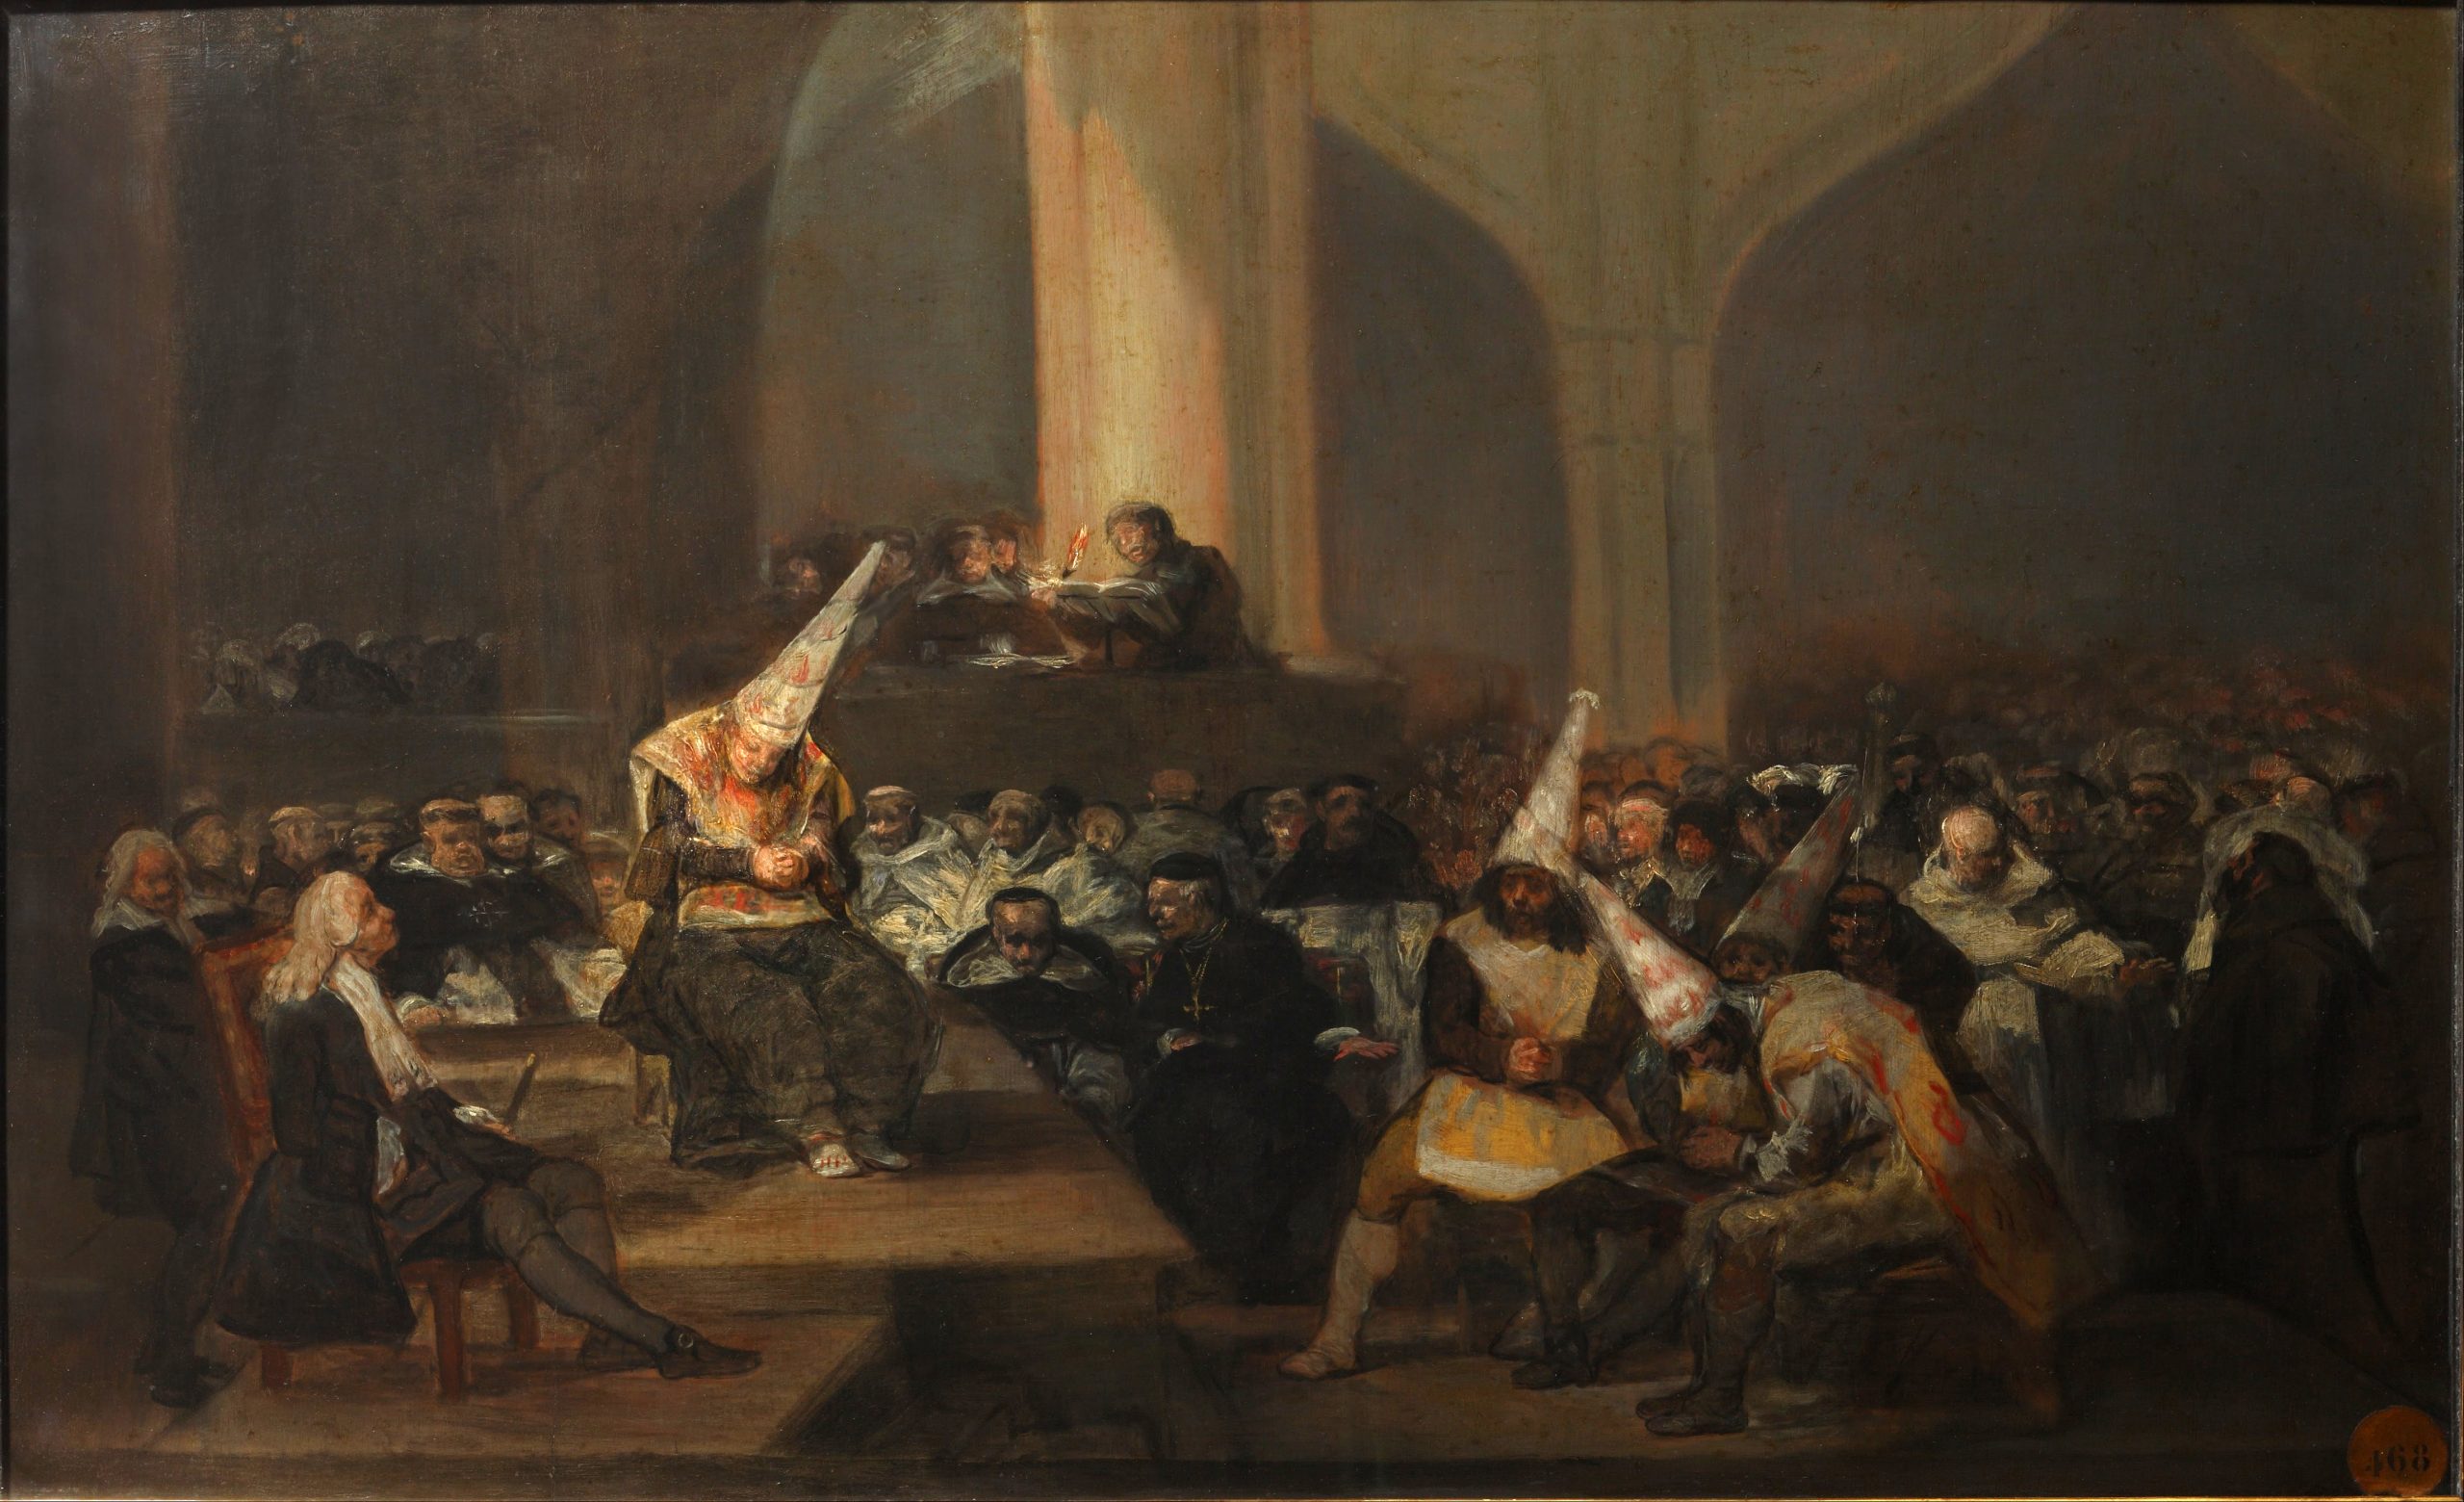 Quem foi perseguido pela Santa Inquisição na Idade Média? (Imagem: "O Tribunal da Inquisição", ptinrau de Francisco Goya 1812-1819)